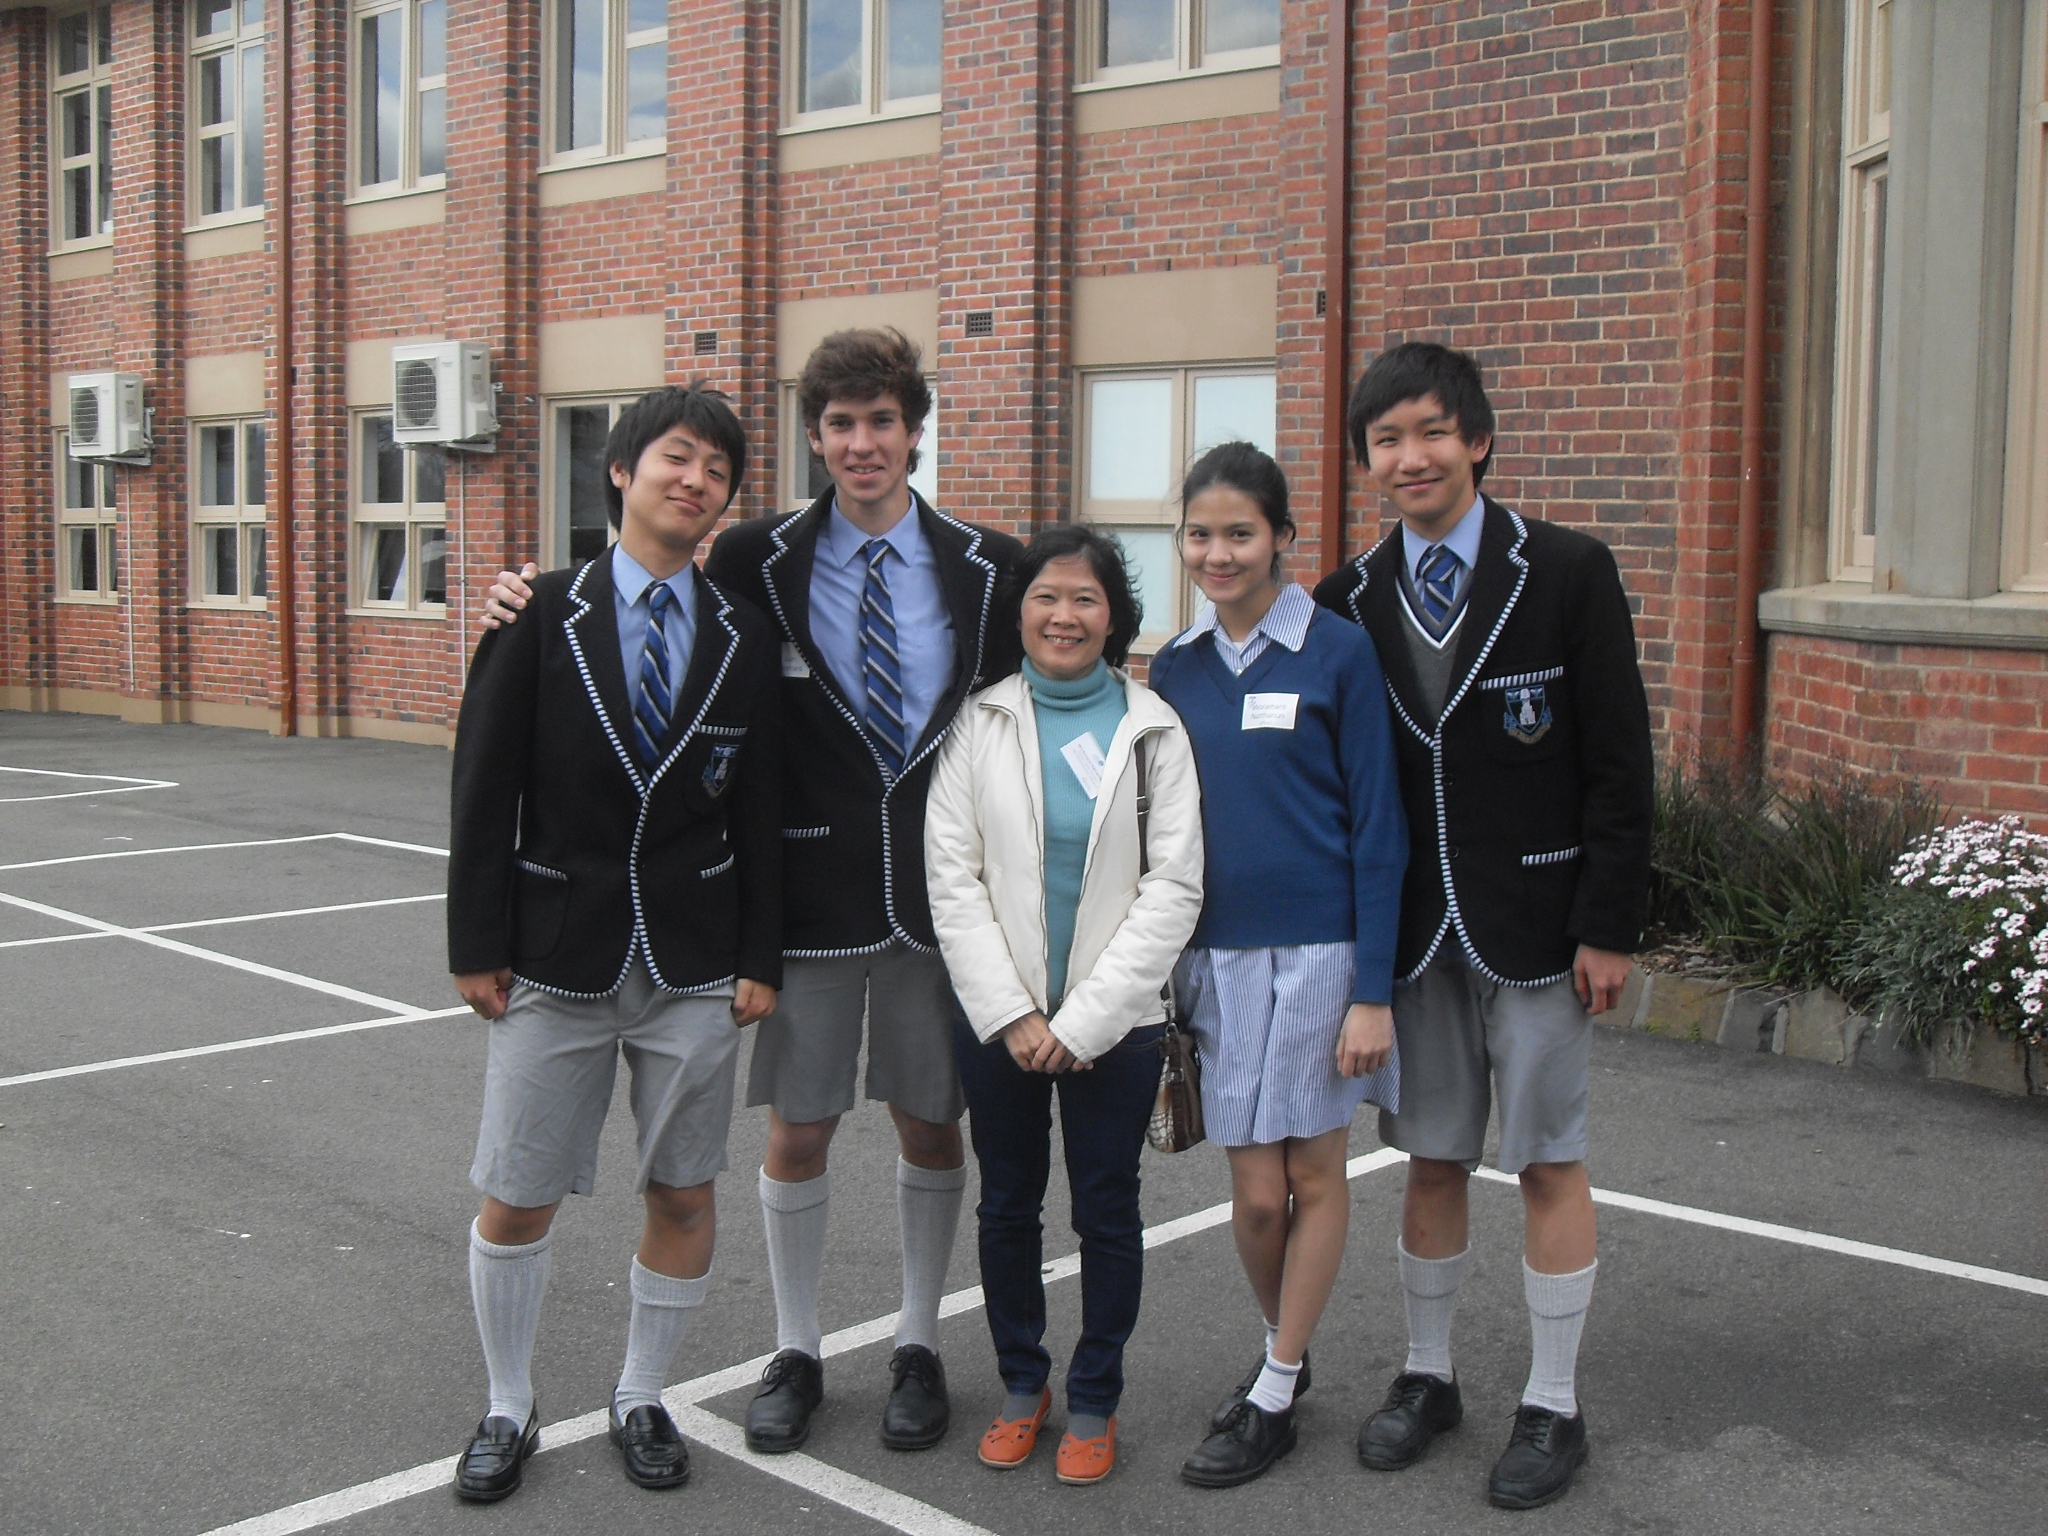 โรงเรียนมัธยมออสเตรเลีย High School ประเทศออสเตรเลีย